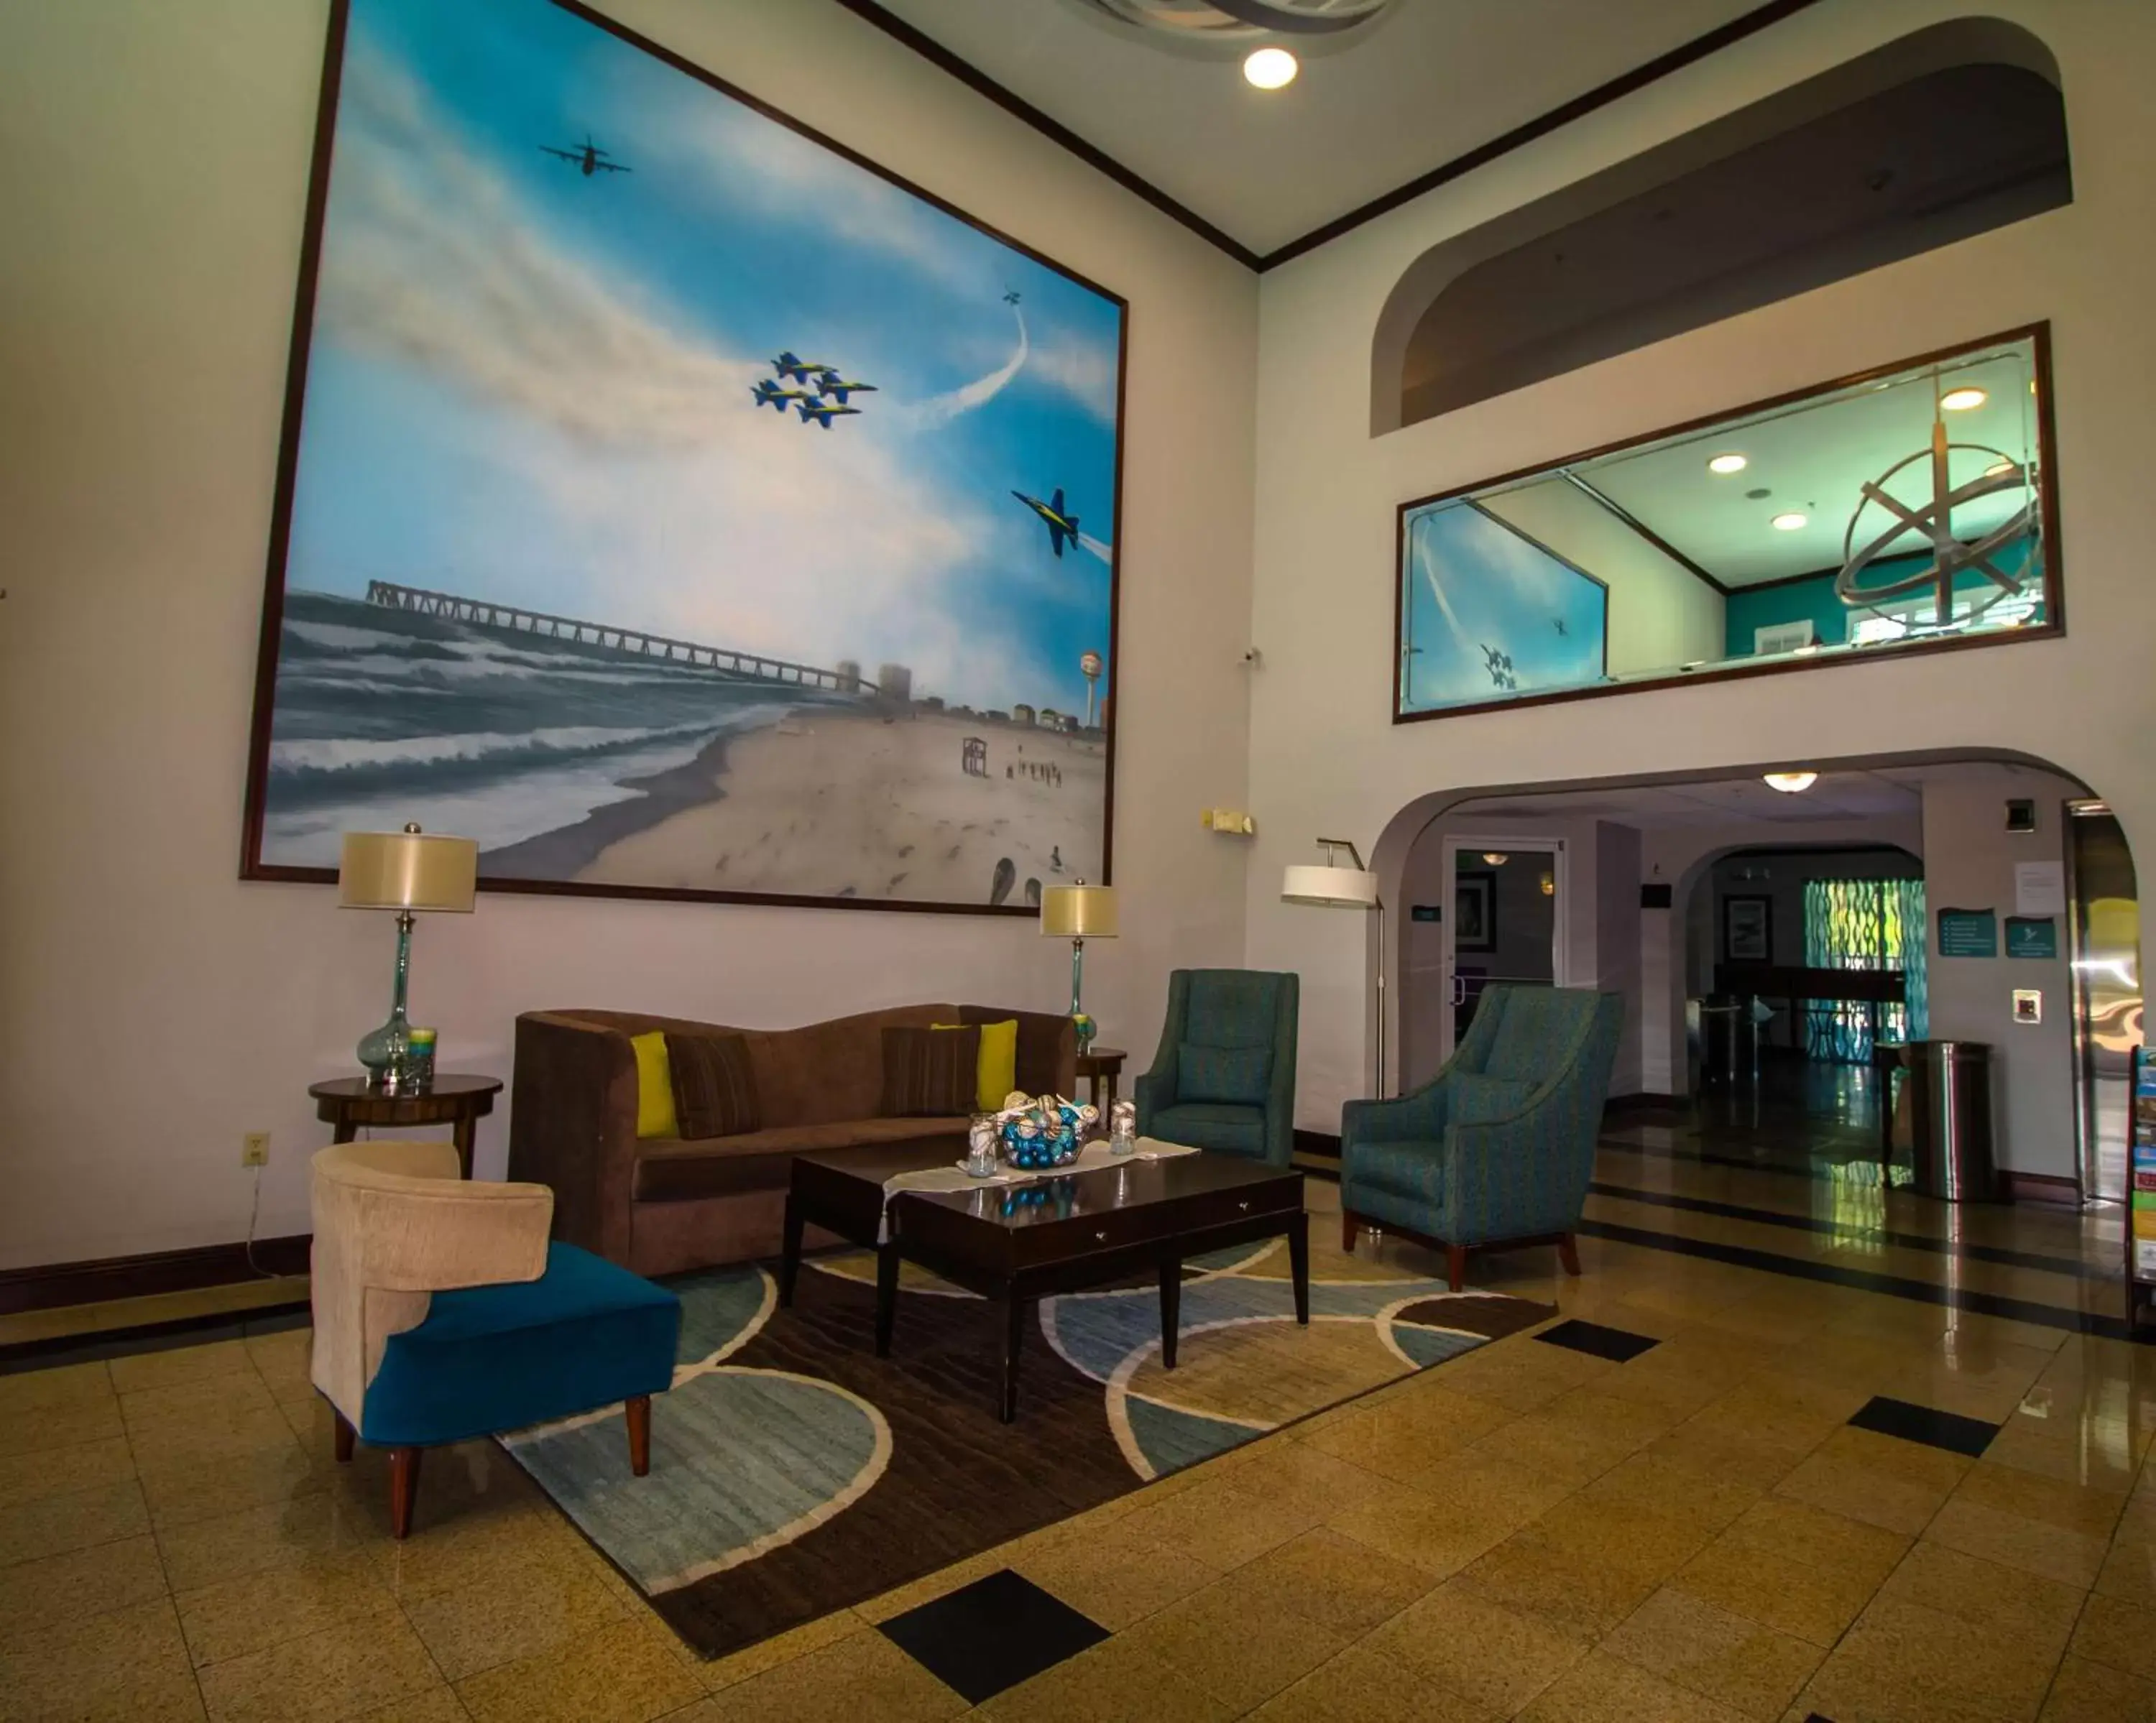 Lobby or reception, Lobby/Reception in Best Western Plus Blue Angel Inn